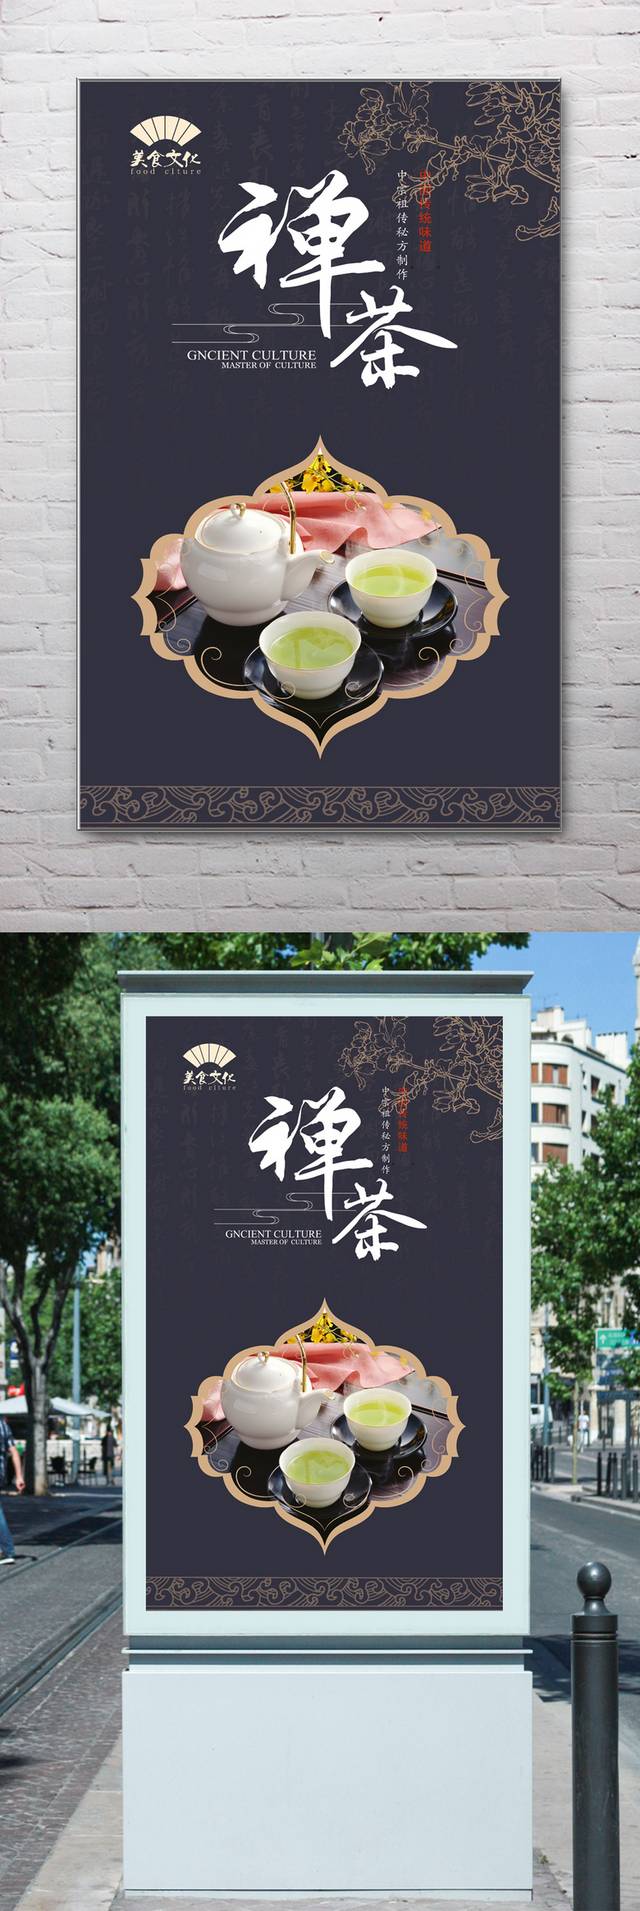 原创茶文化海报设计